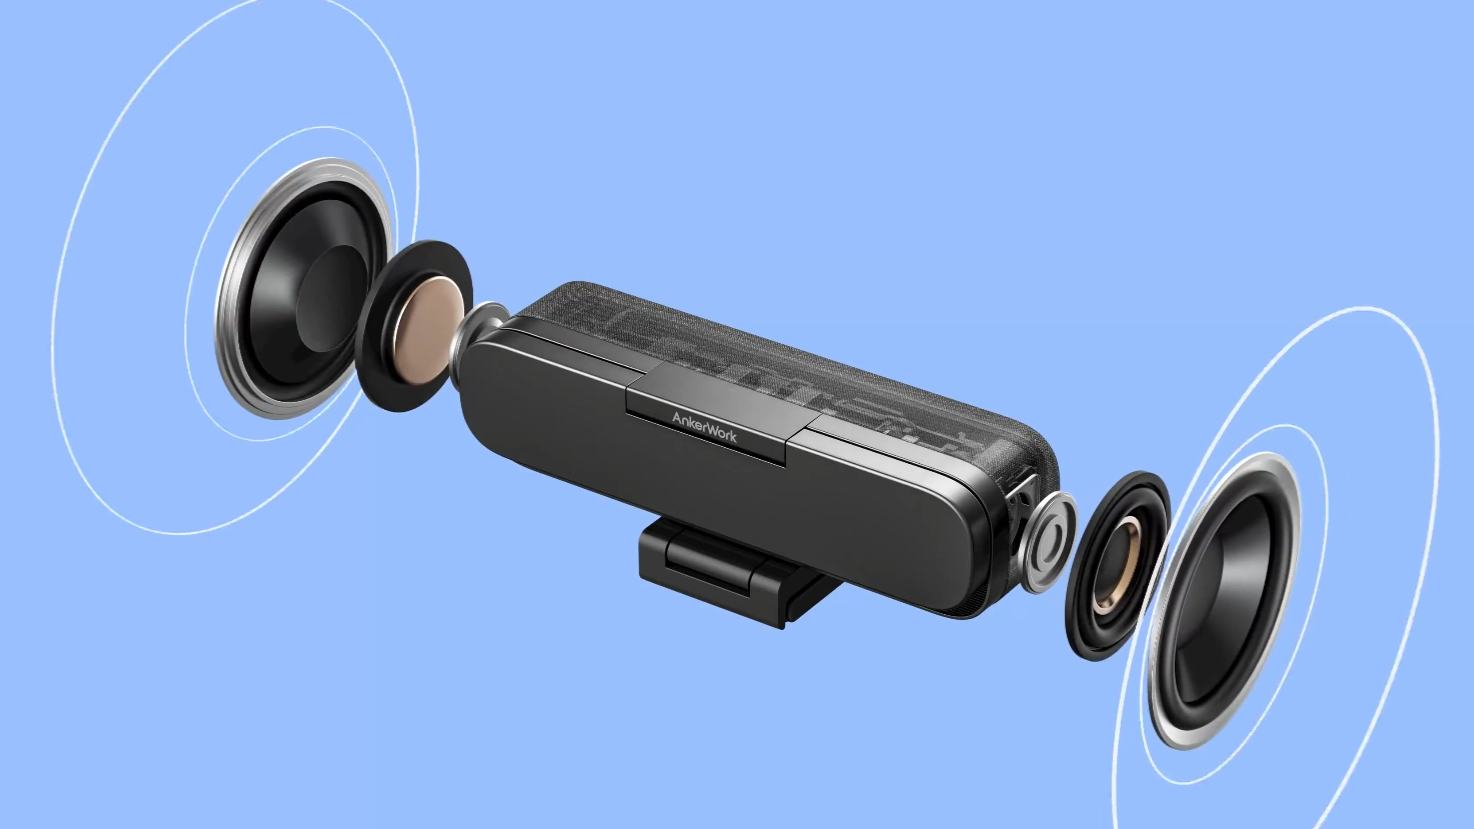 AnkerWork presenta una cámara web con iluminación y parlantes incorporados